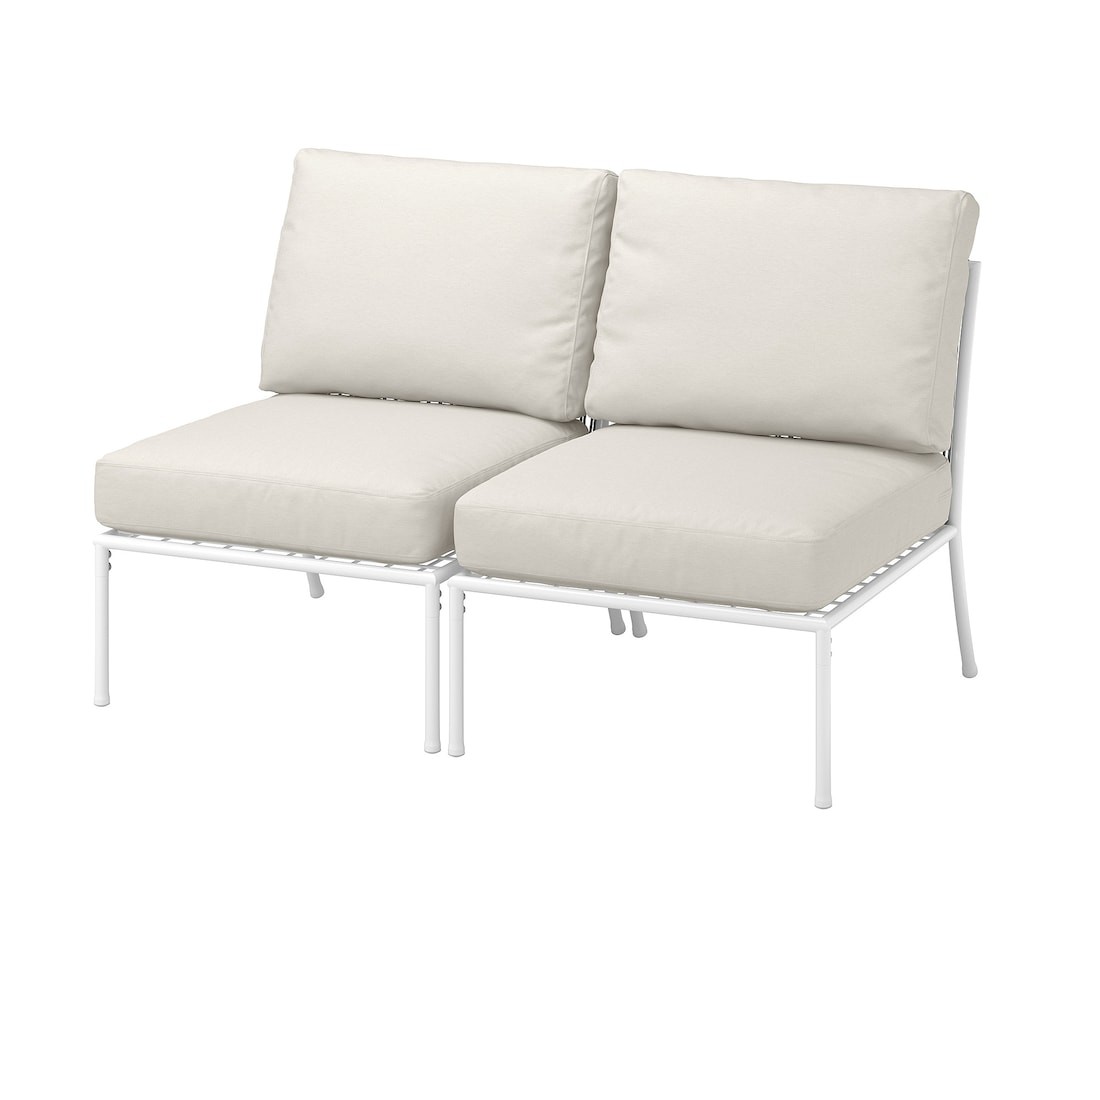 IKEA SEGERÖN СЕГЕРОН 2-місний диван, для вулиці, білий / бежевий / Frösön / Duvholmen бежевий 89523562 895.235.62